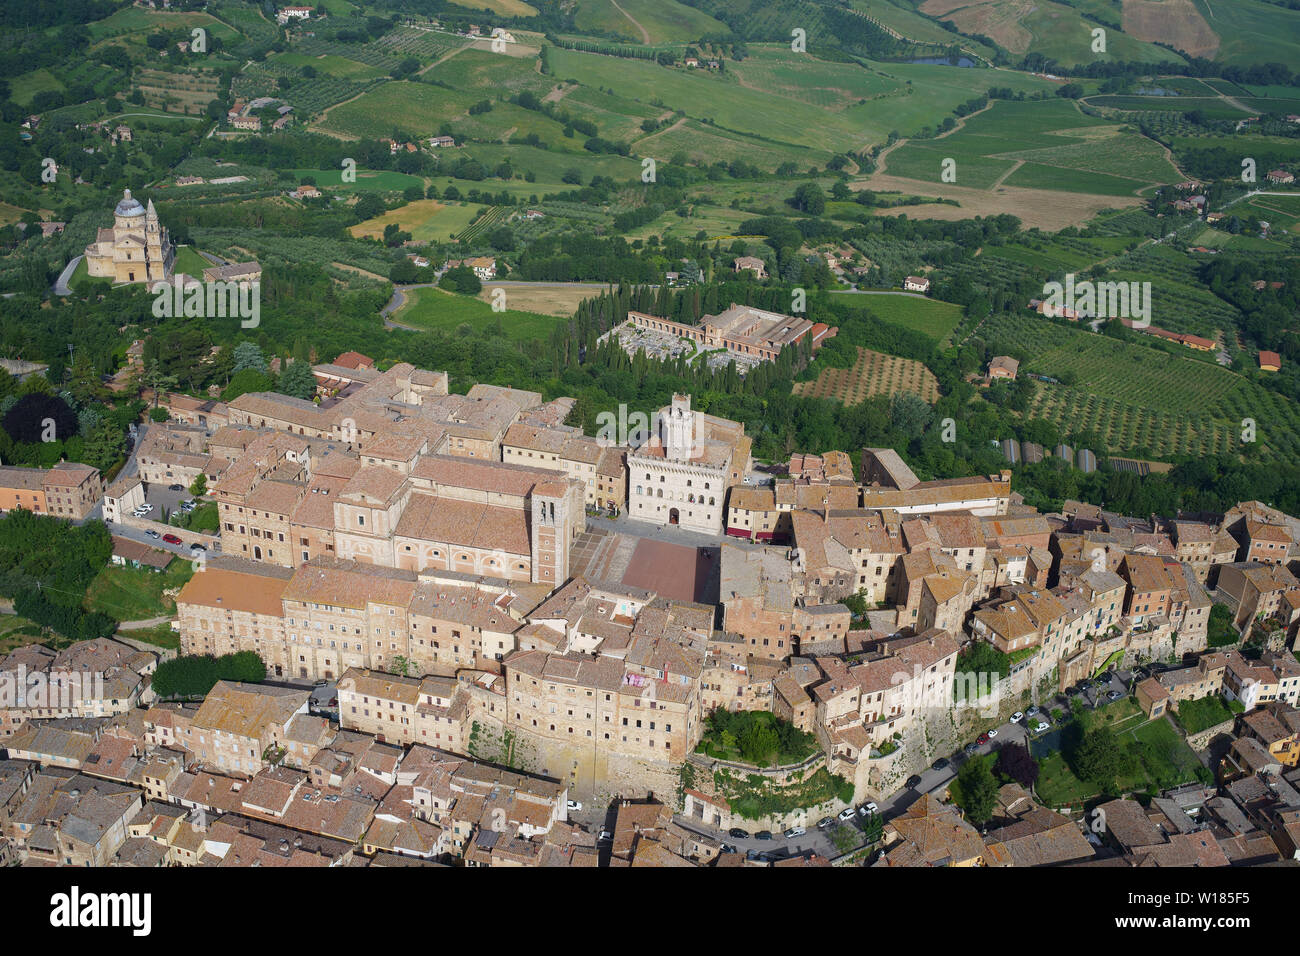 LUFTAUFNAHME. Mittelalterliche Stadt auf einem Hügel, die das Ackerland des Val di Chiana und die Kirche San Biagio beherrscht. Montepulciano, Provinz Siena, Toskana, Italien. Stockfoto